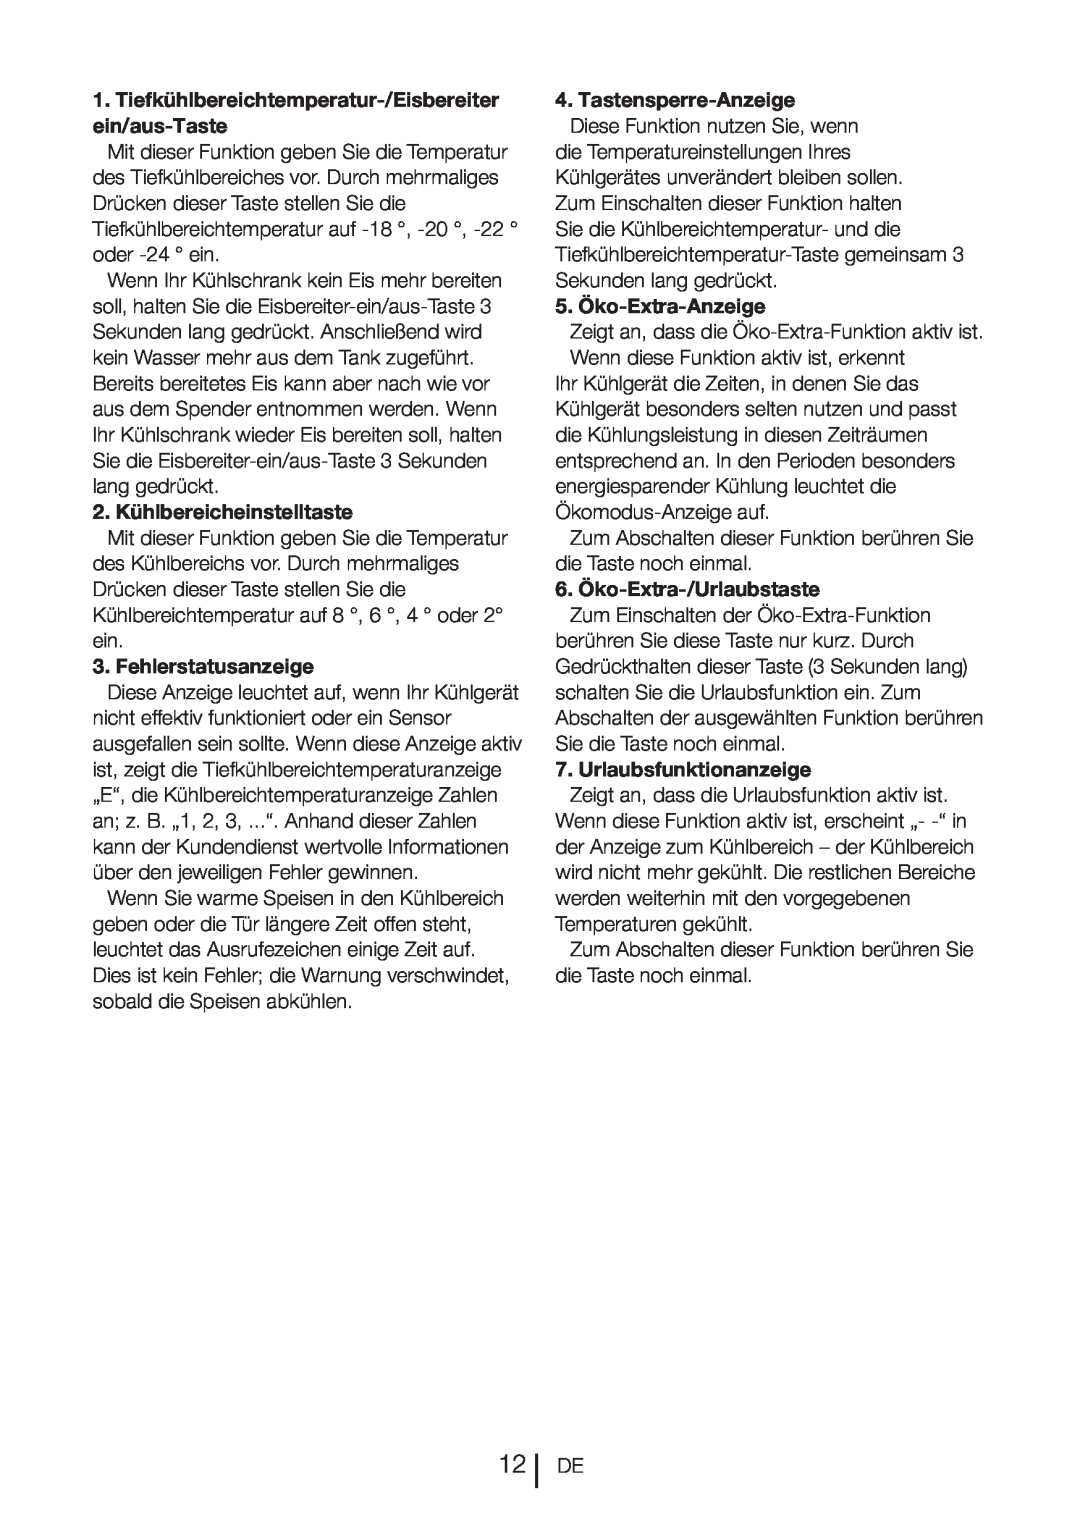 Blomberg DND 9977 PD manual 2.Kühlbereicheinstelltaste, Fehlerstatusanzeige, Tastensperre-Anzeige, 5. Öko-Extra-Anzeige 